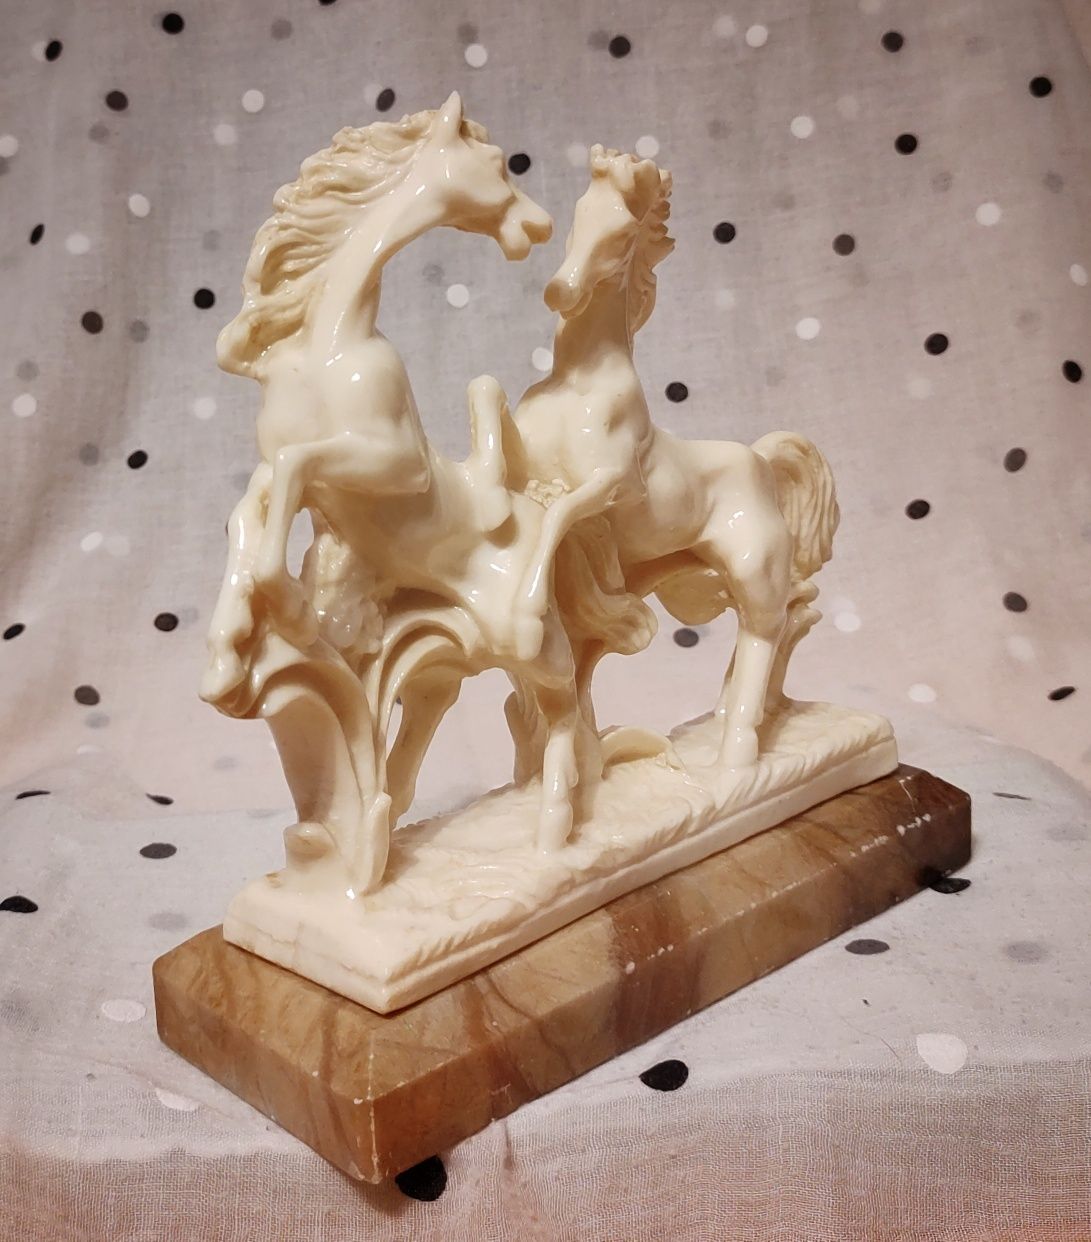 Konie, figurka, statuetka, rzeźba na kamiennej podstawie.